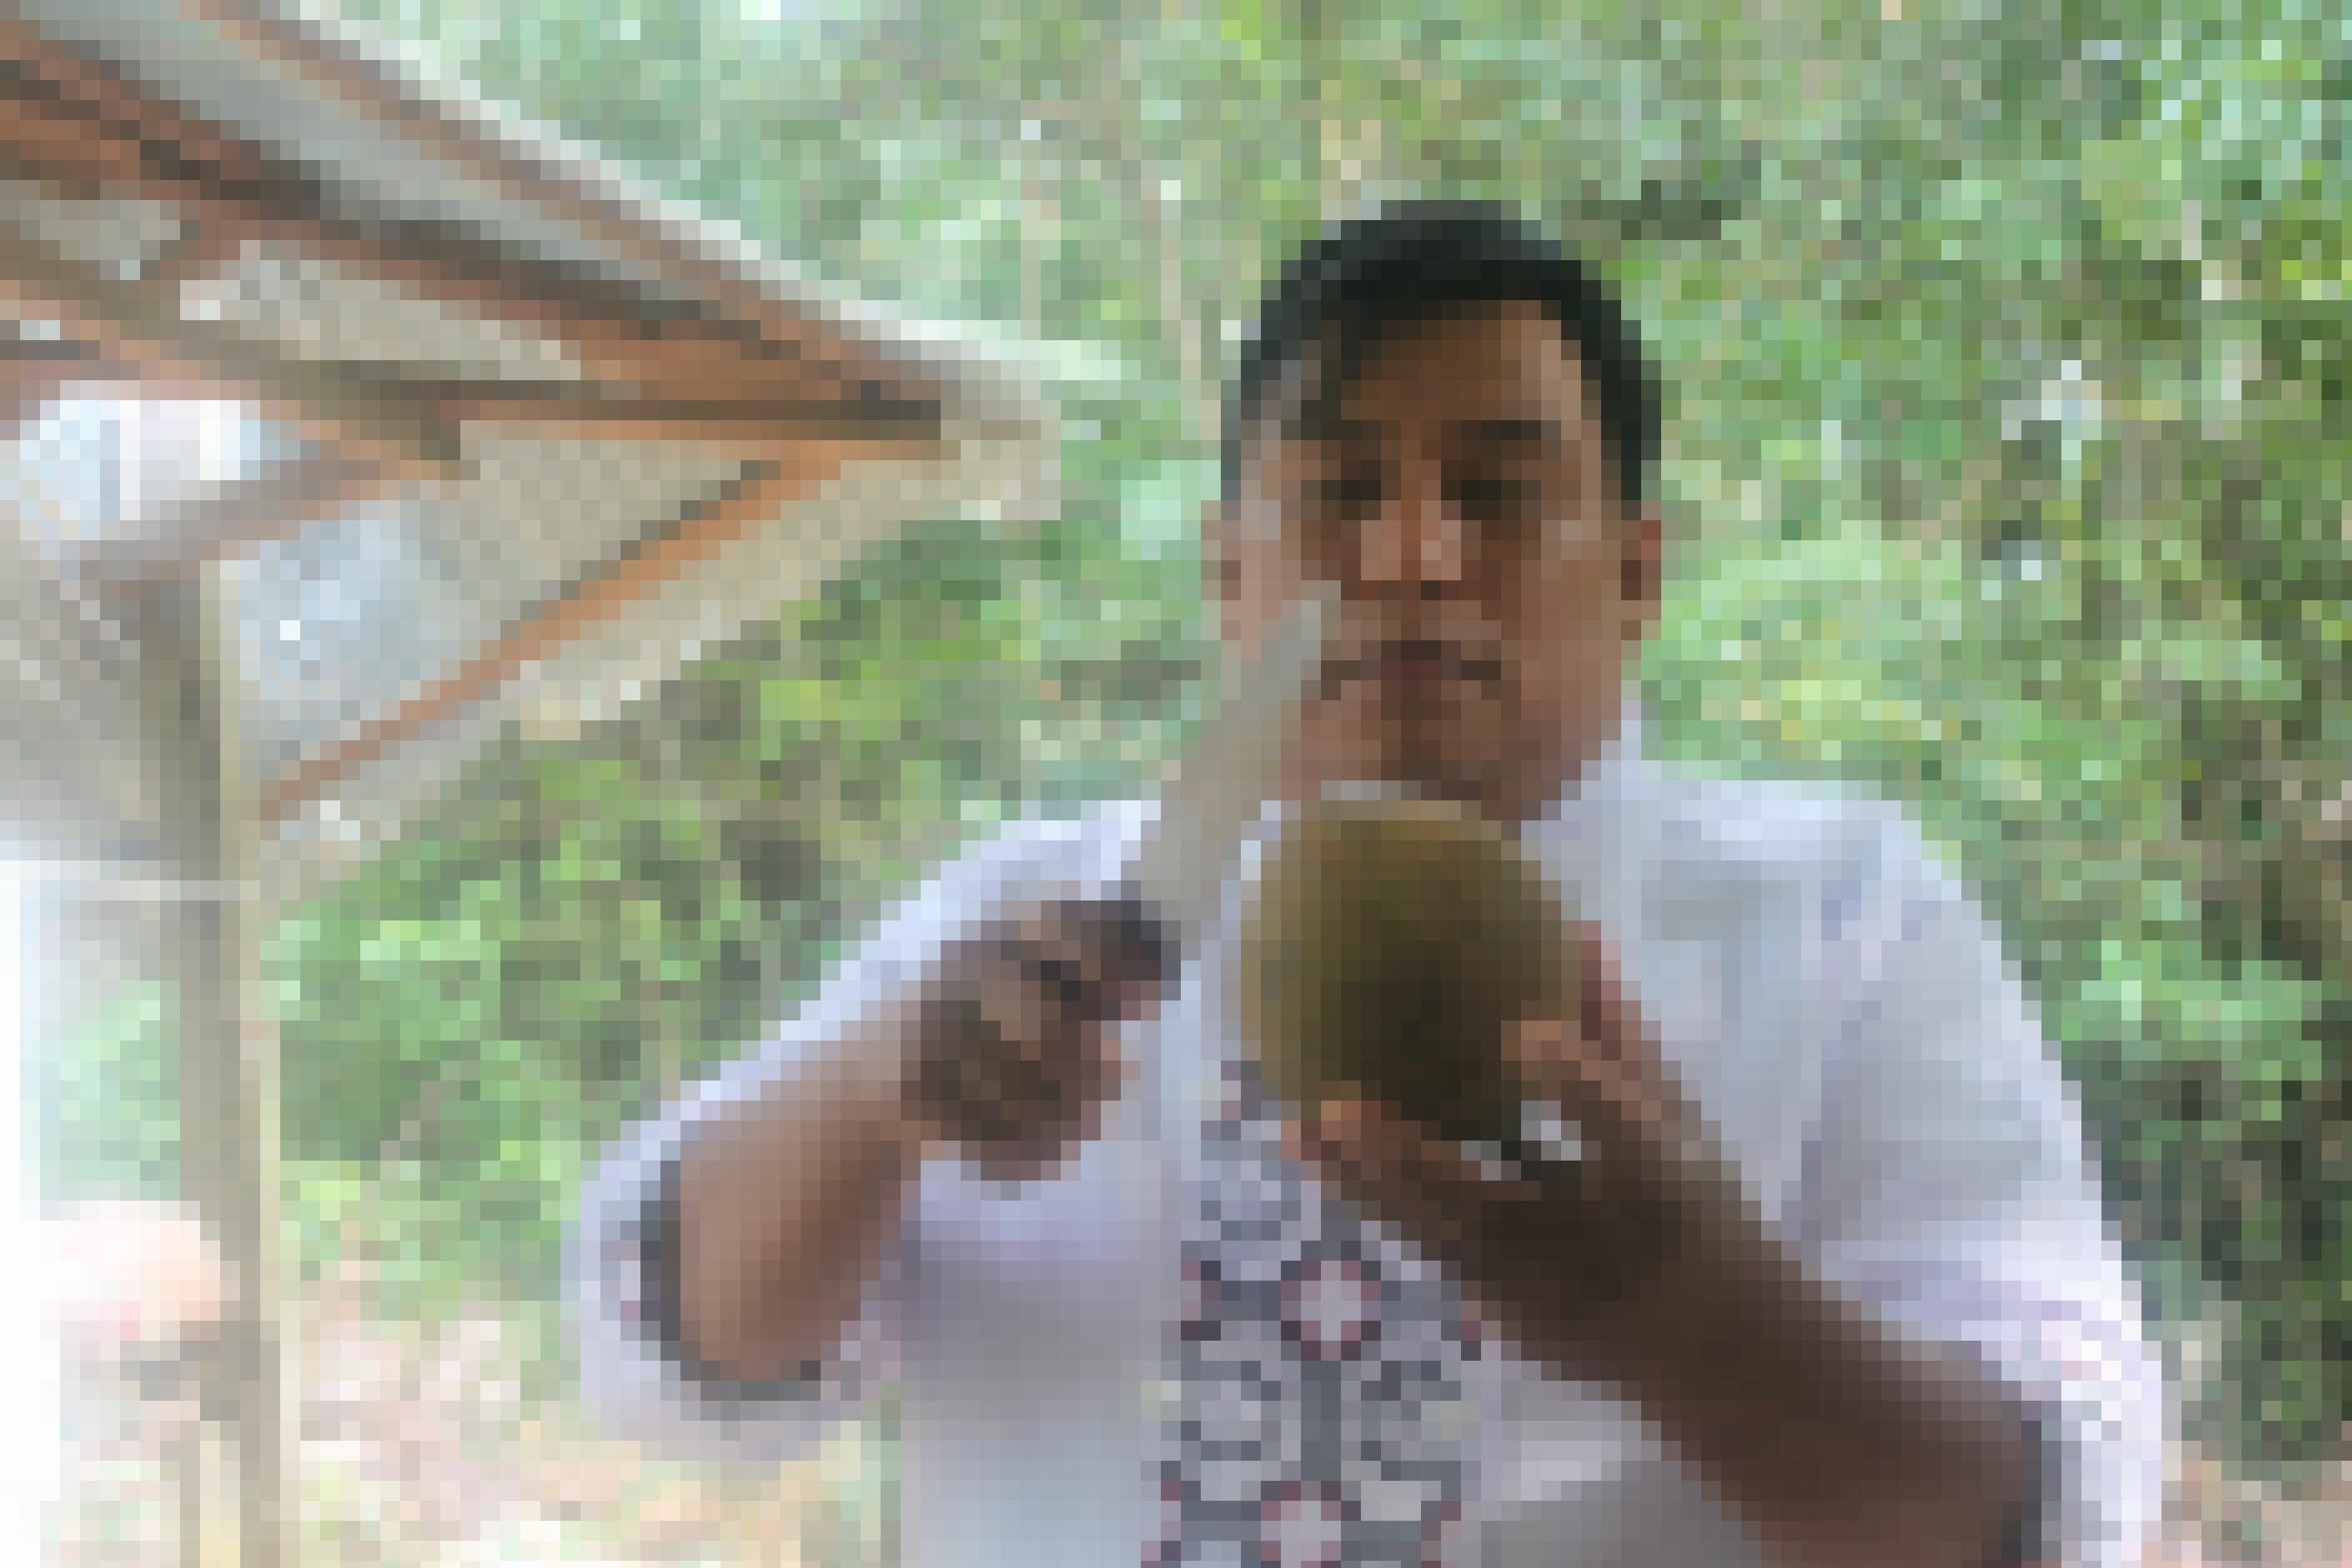 Mann mit Messer und runder Kokosnuss-großer Frucht in der Hand.